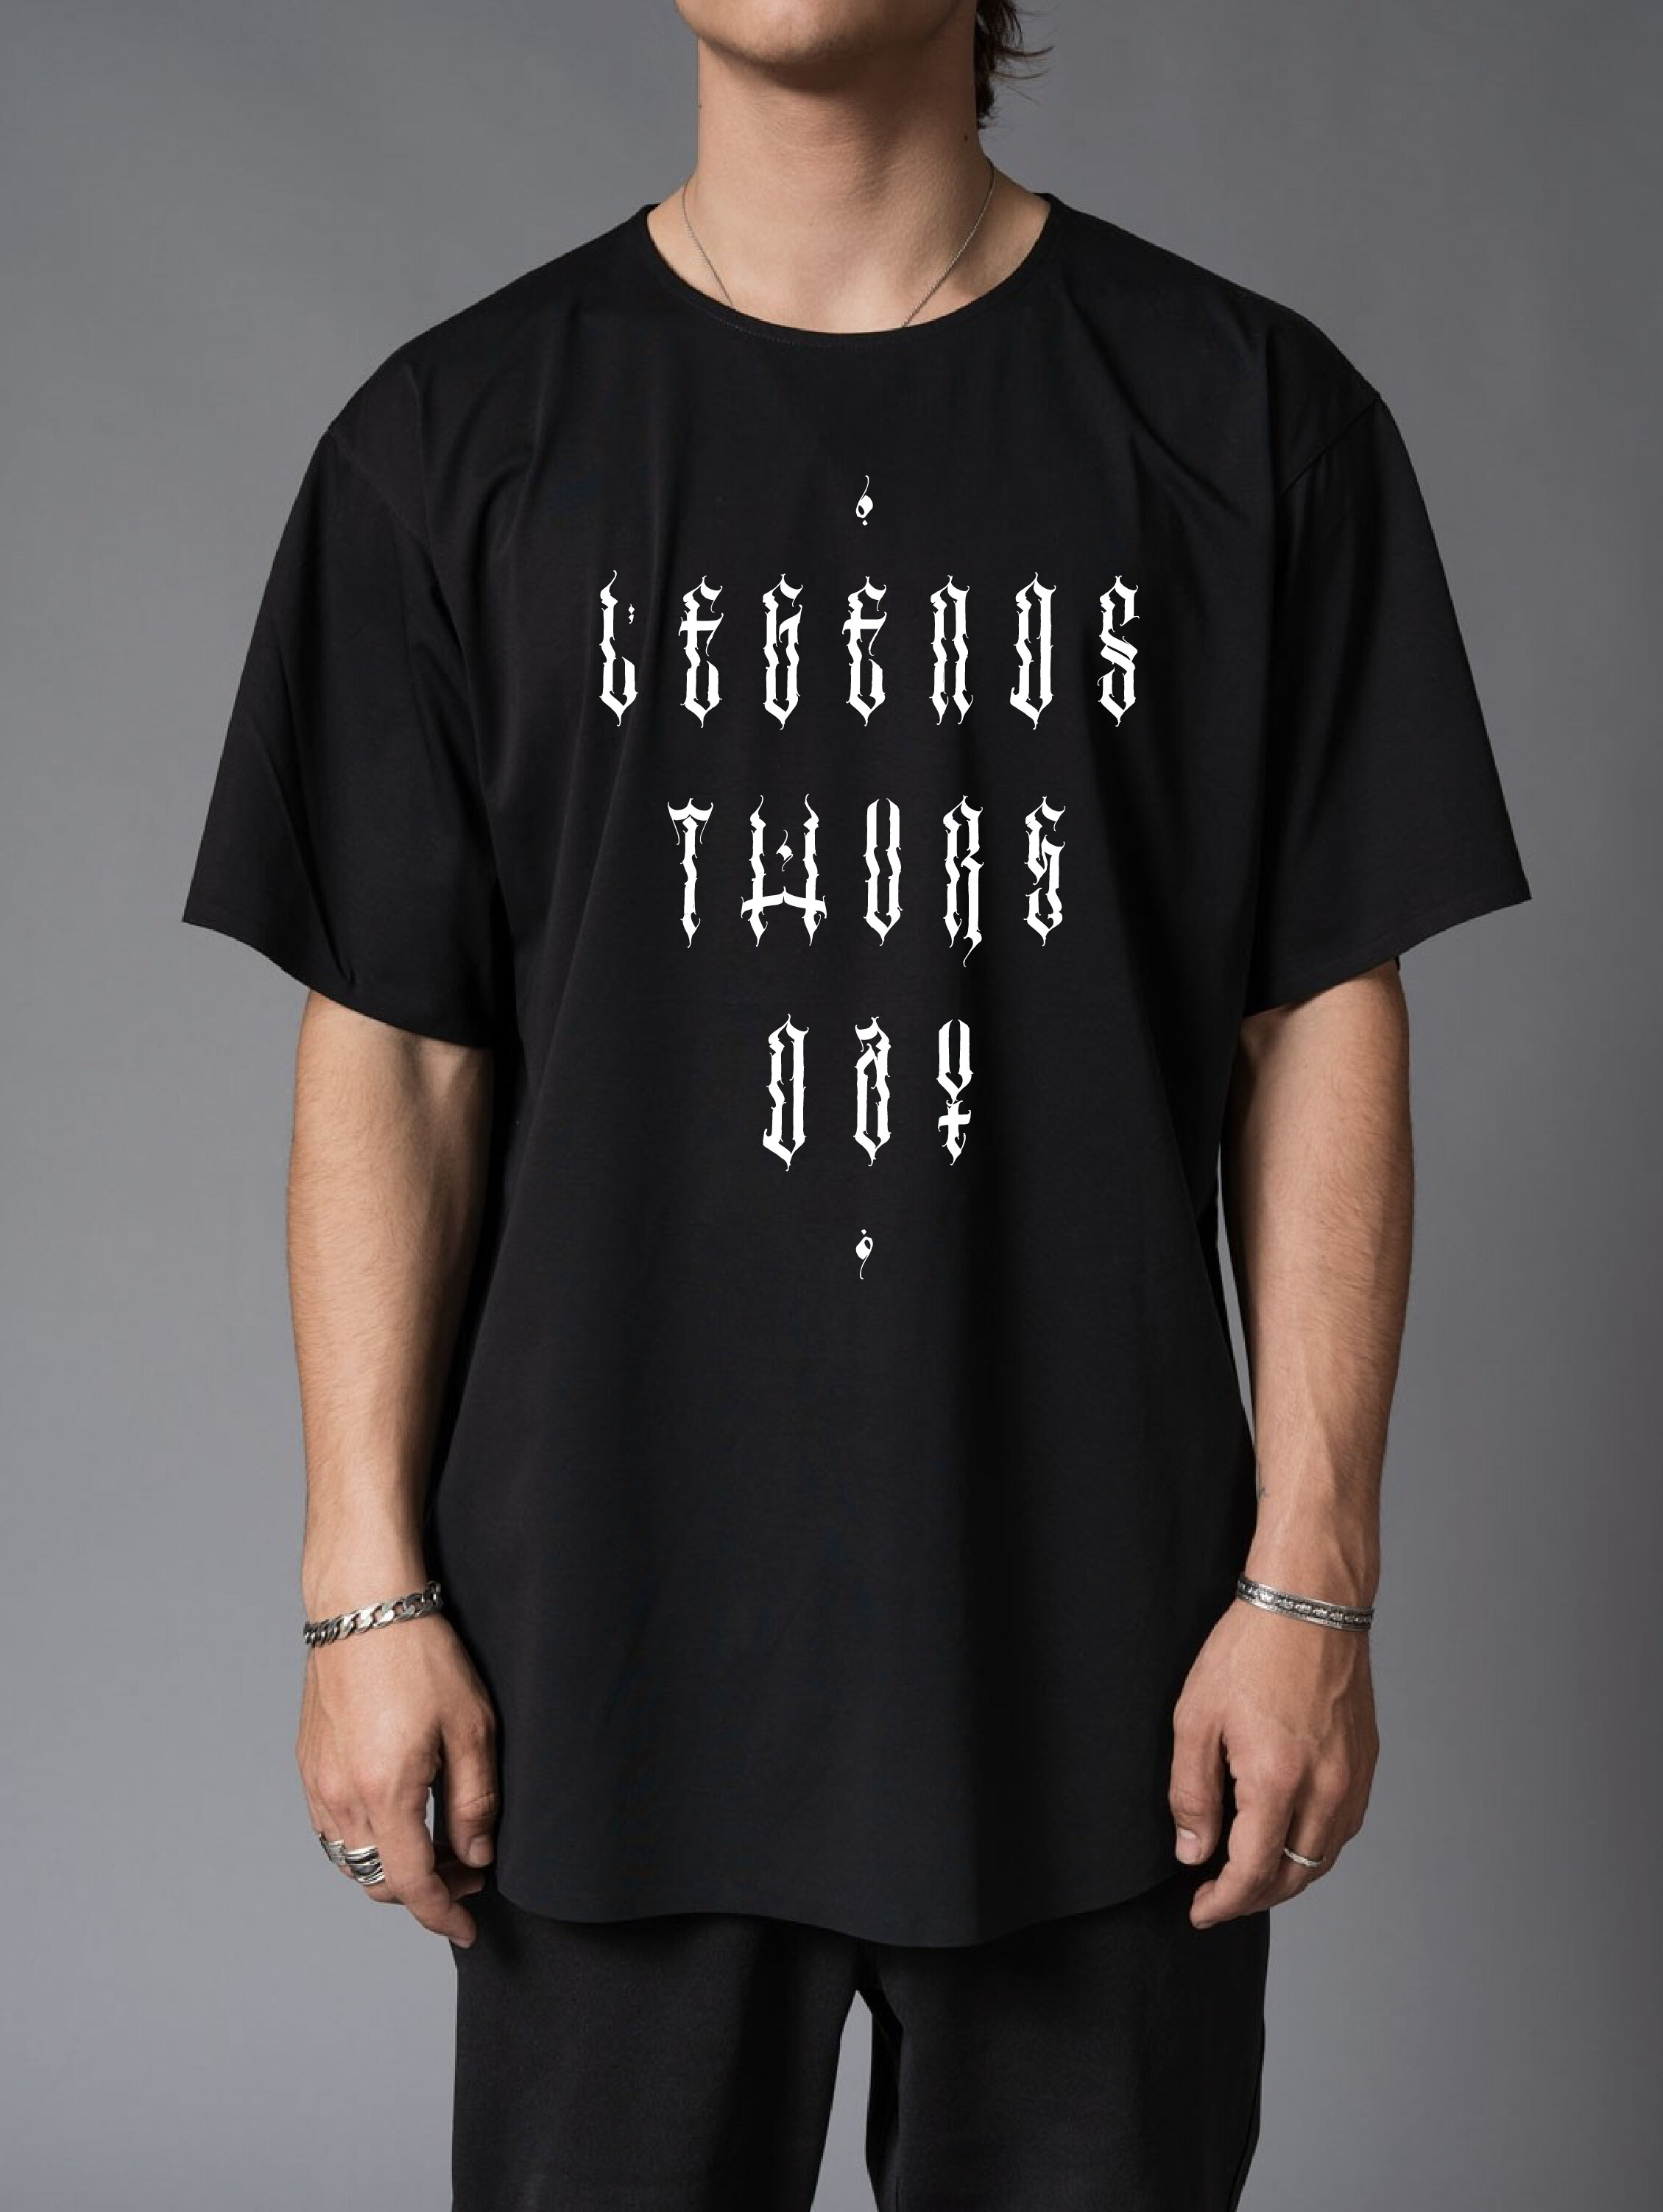 Legends Thursday Shirt-01.jpg